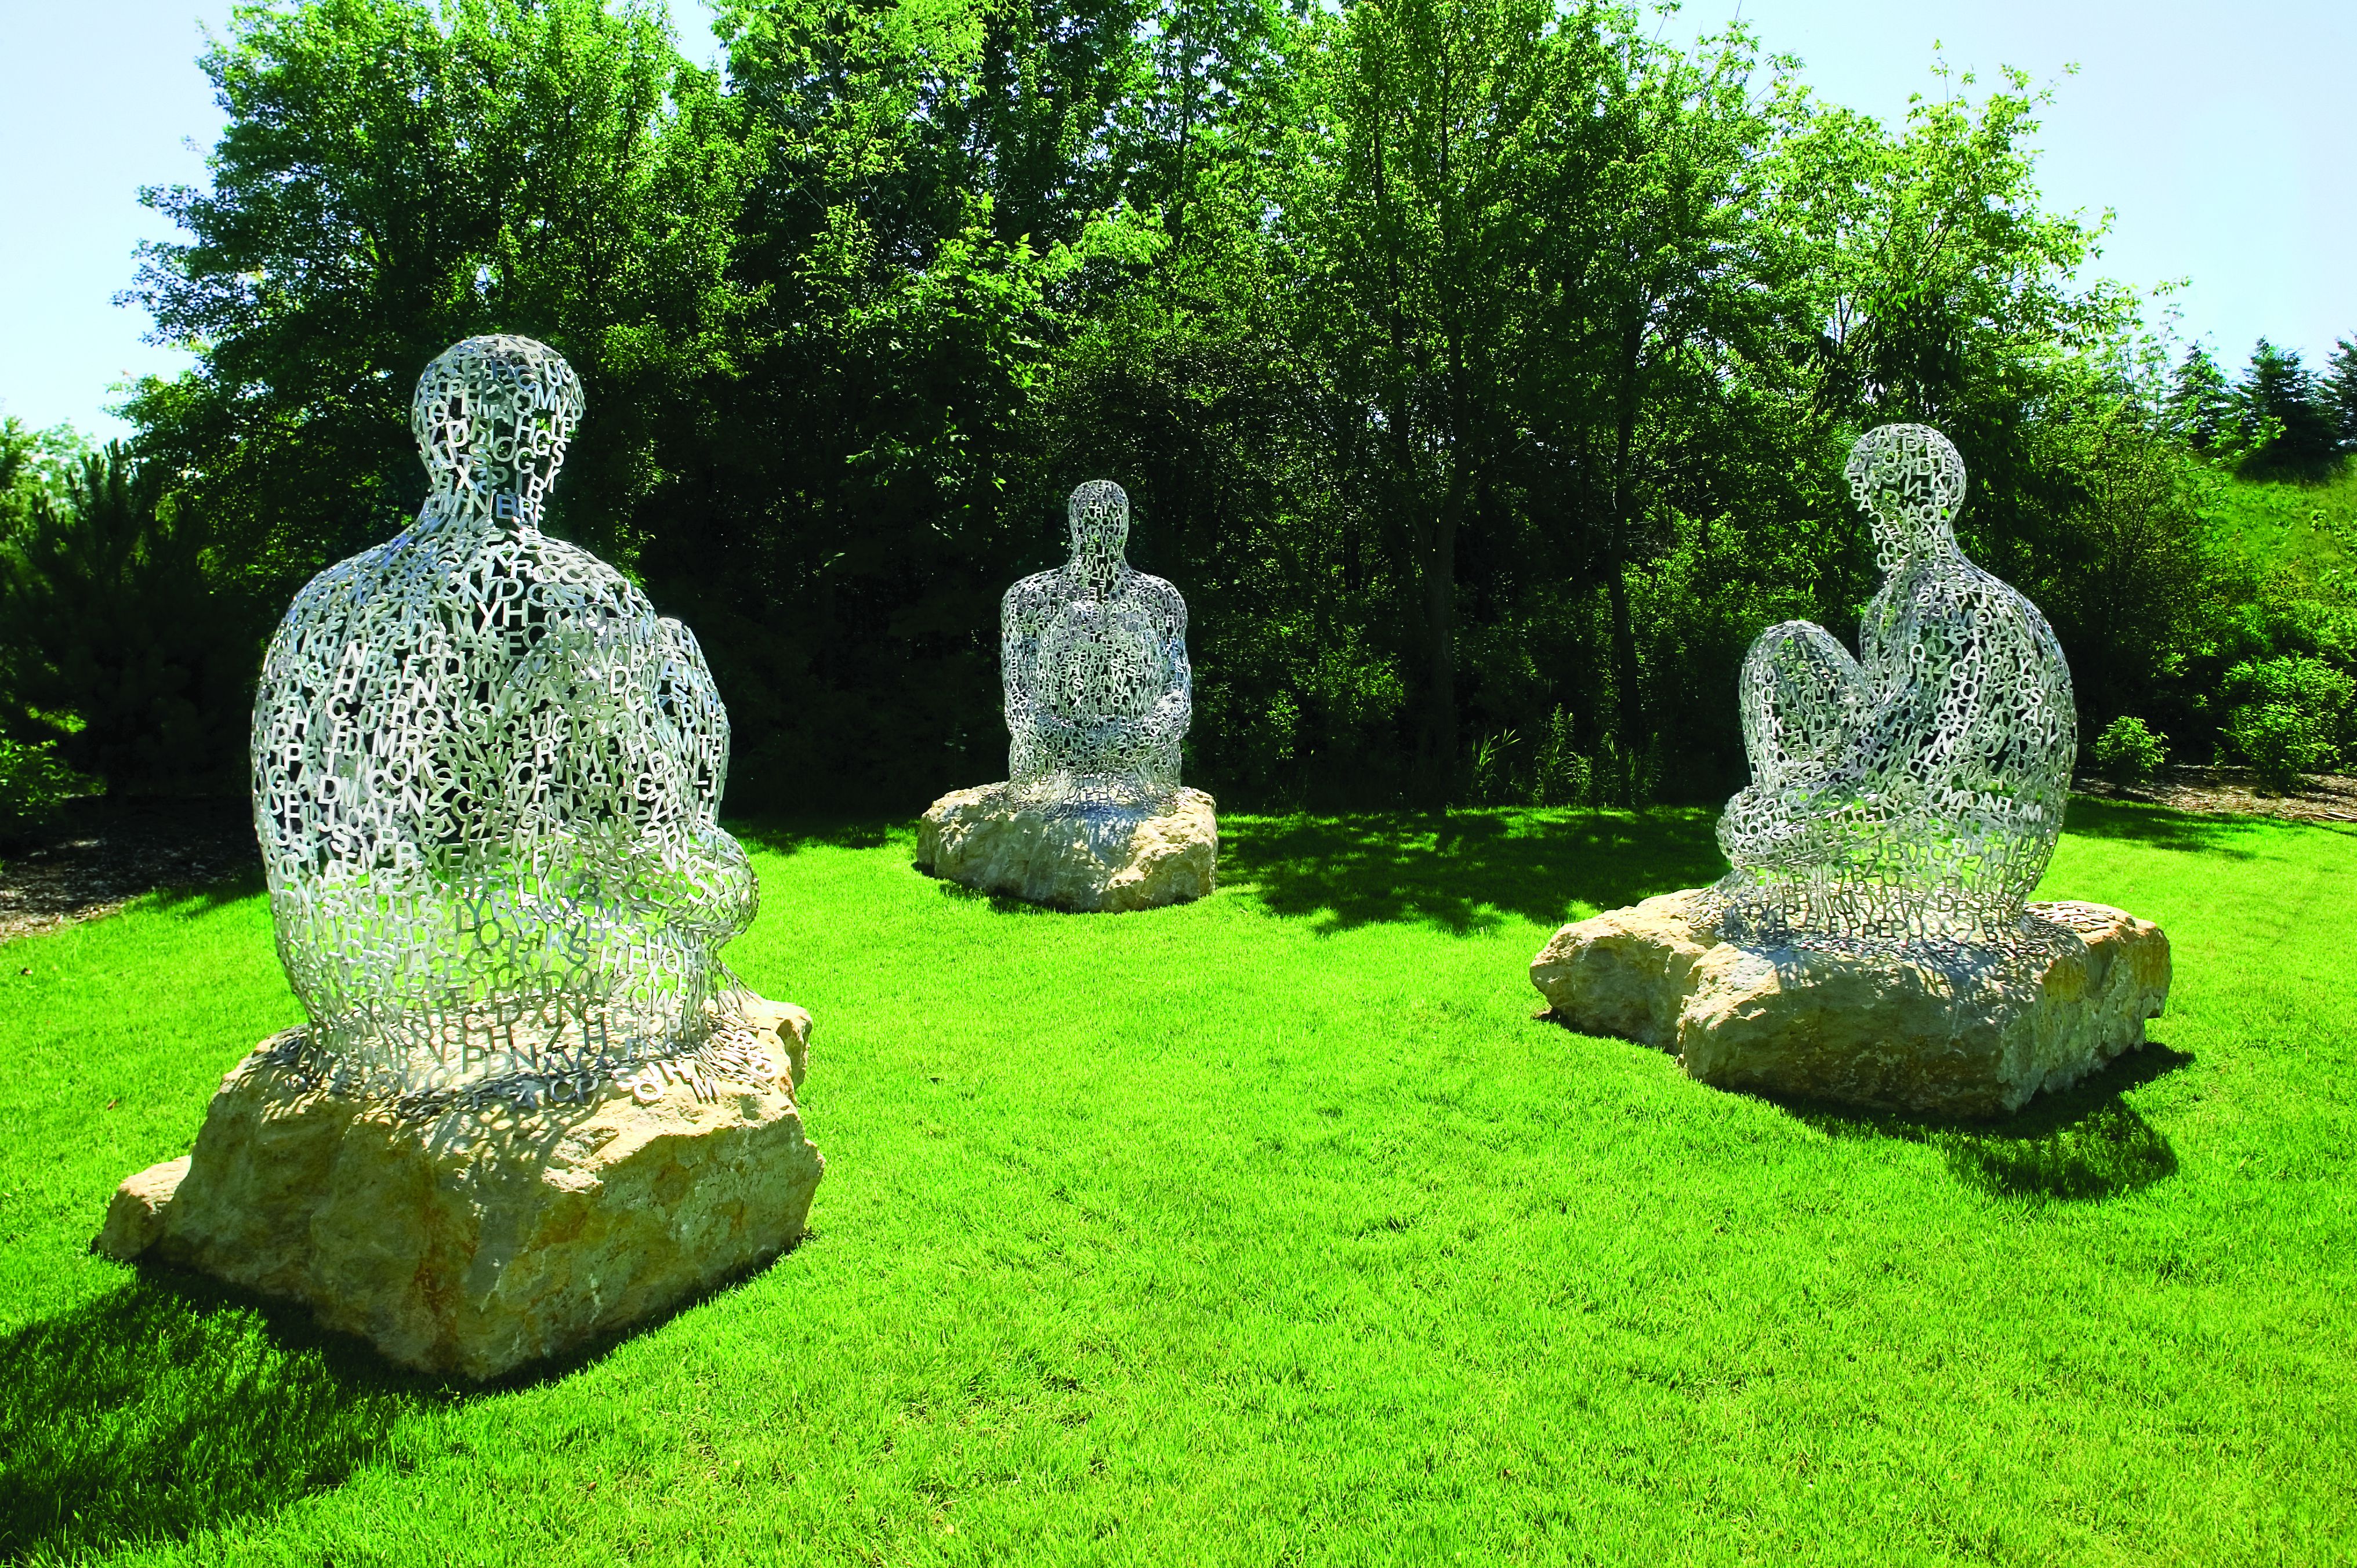 Spanish Artist Jaume Plensa Creating Work For New Meijer Gardens